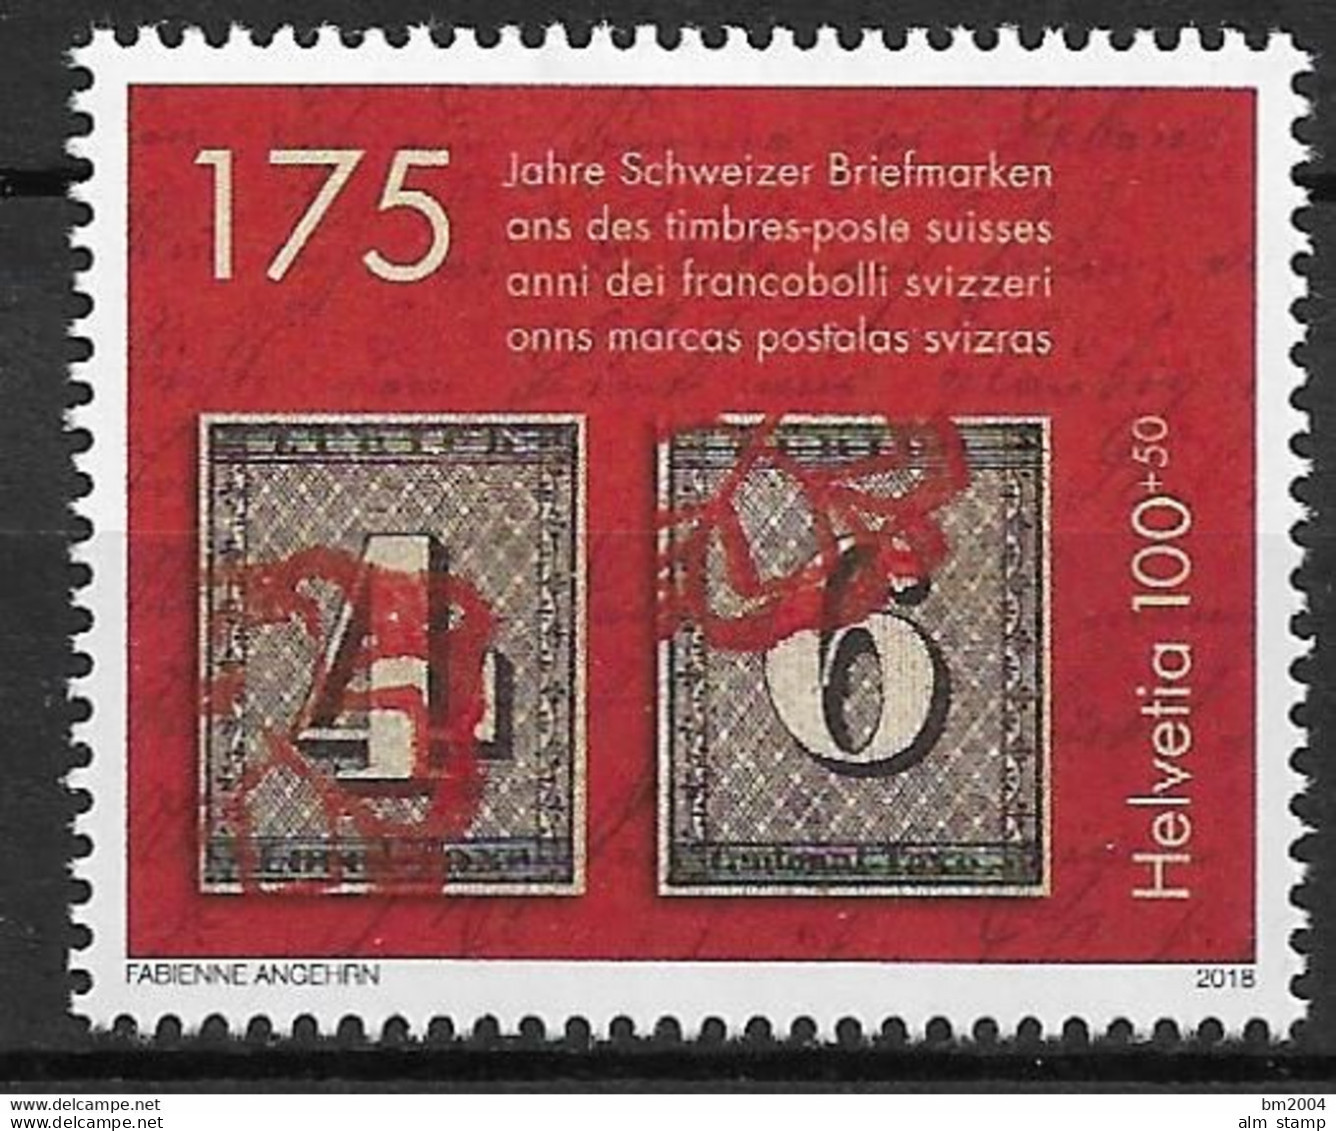 2018 Schweiz Mi. 2531 **MNH   175 Jahre Schweizer Briefmarken - Neufs